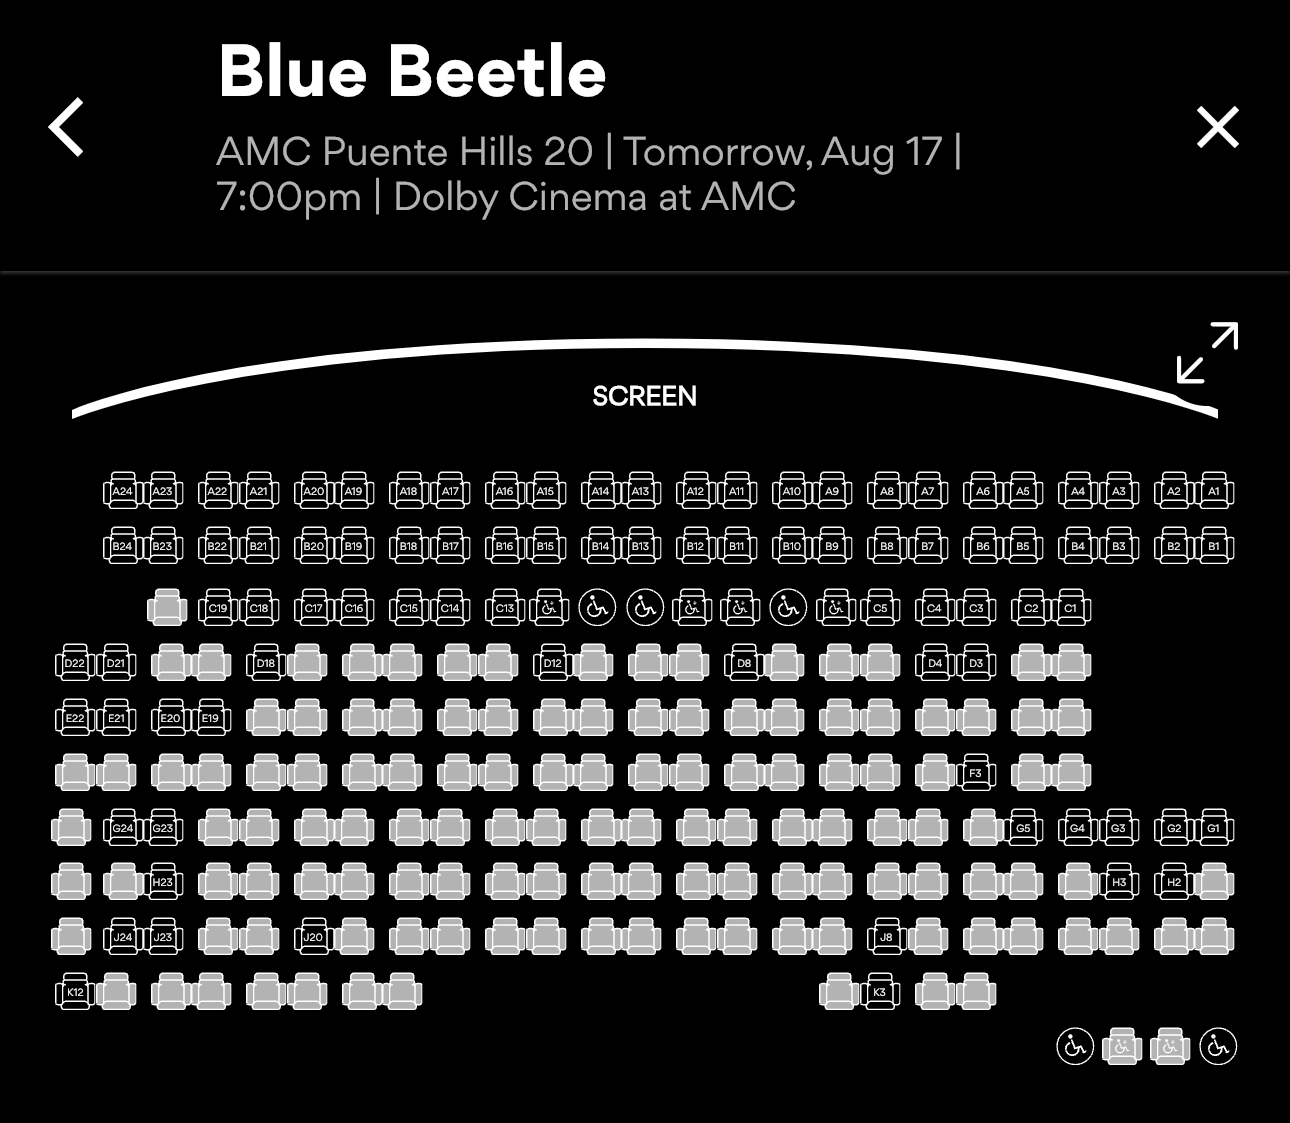 Люди не хотят идти: фильм «Синий жук» начал прокат с пустыми залами кинотеатров